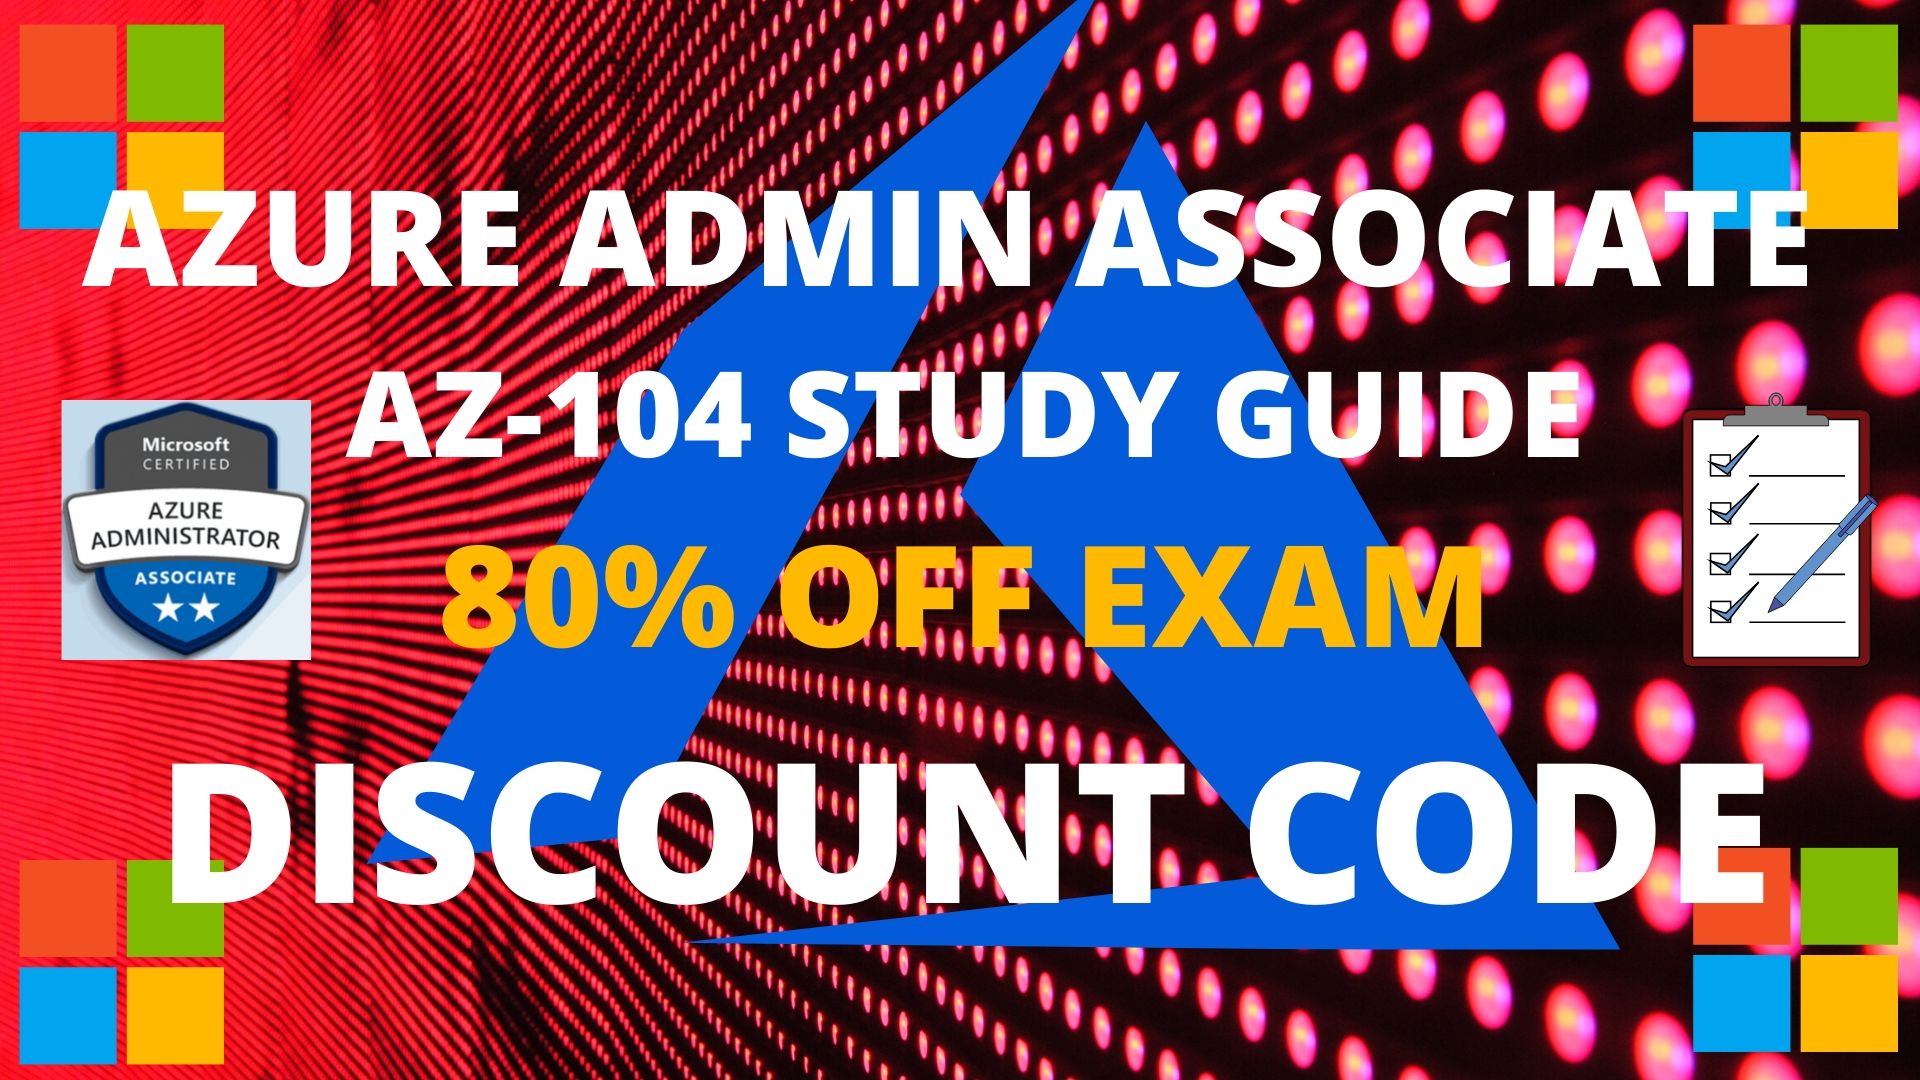 Azure AZ-104 Study Guide and Exam Discount Code